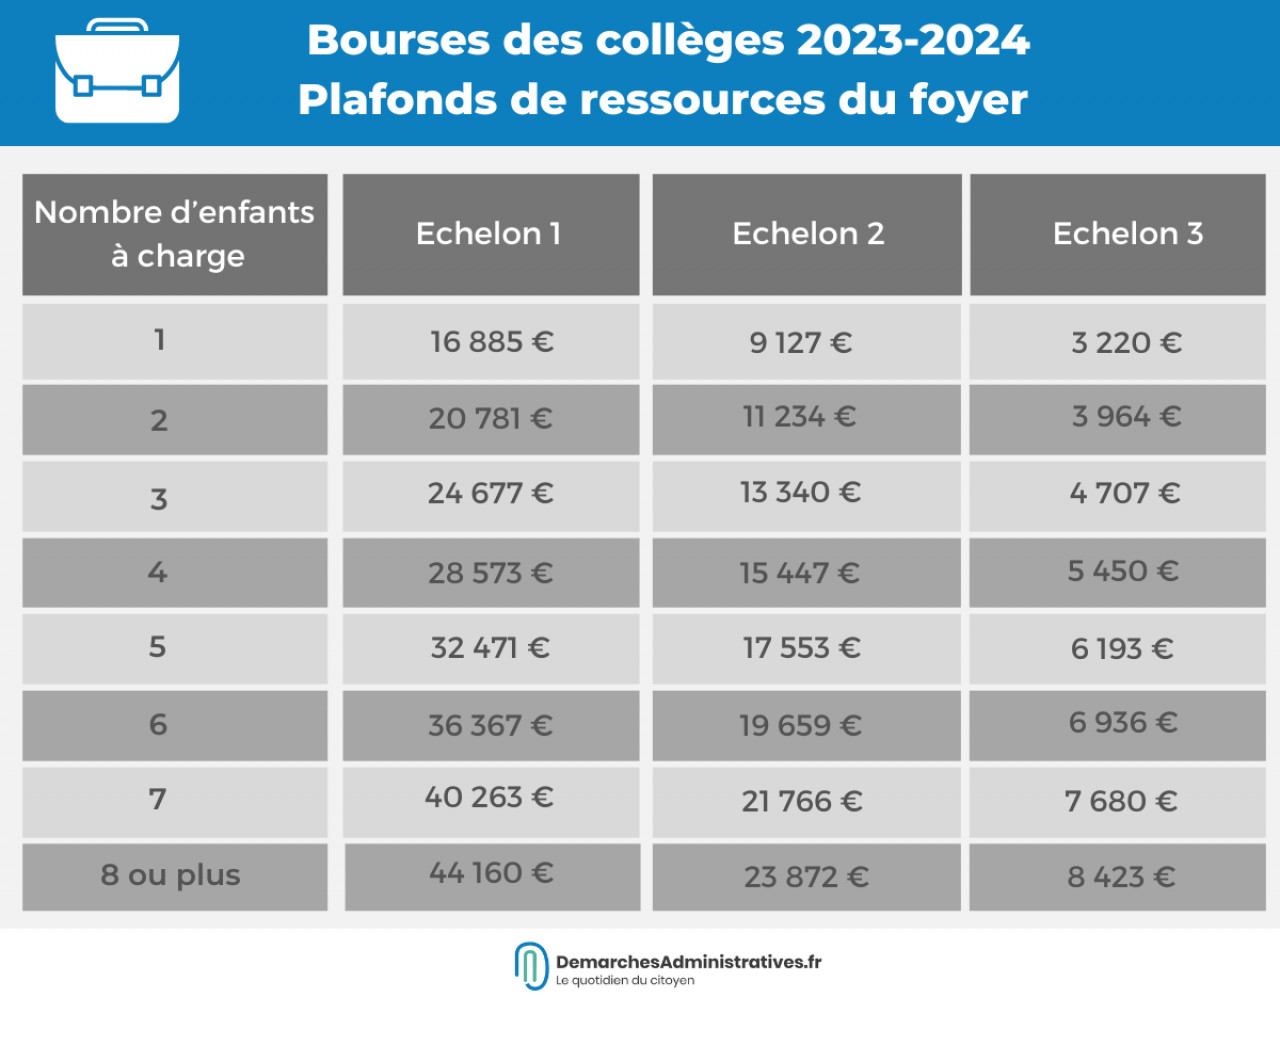 Bourse des collèges 2023-2024 : date limite et montant